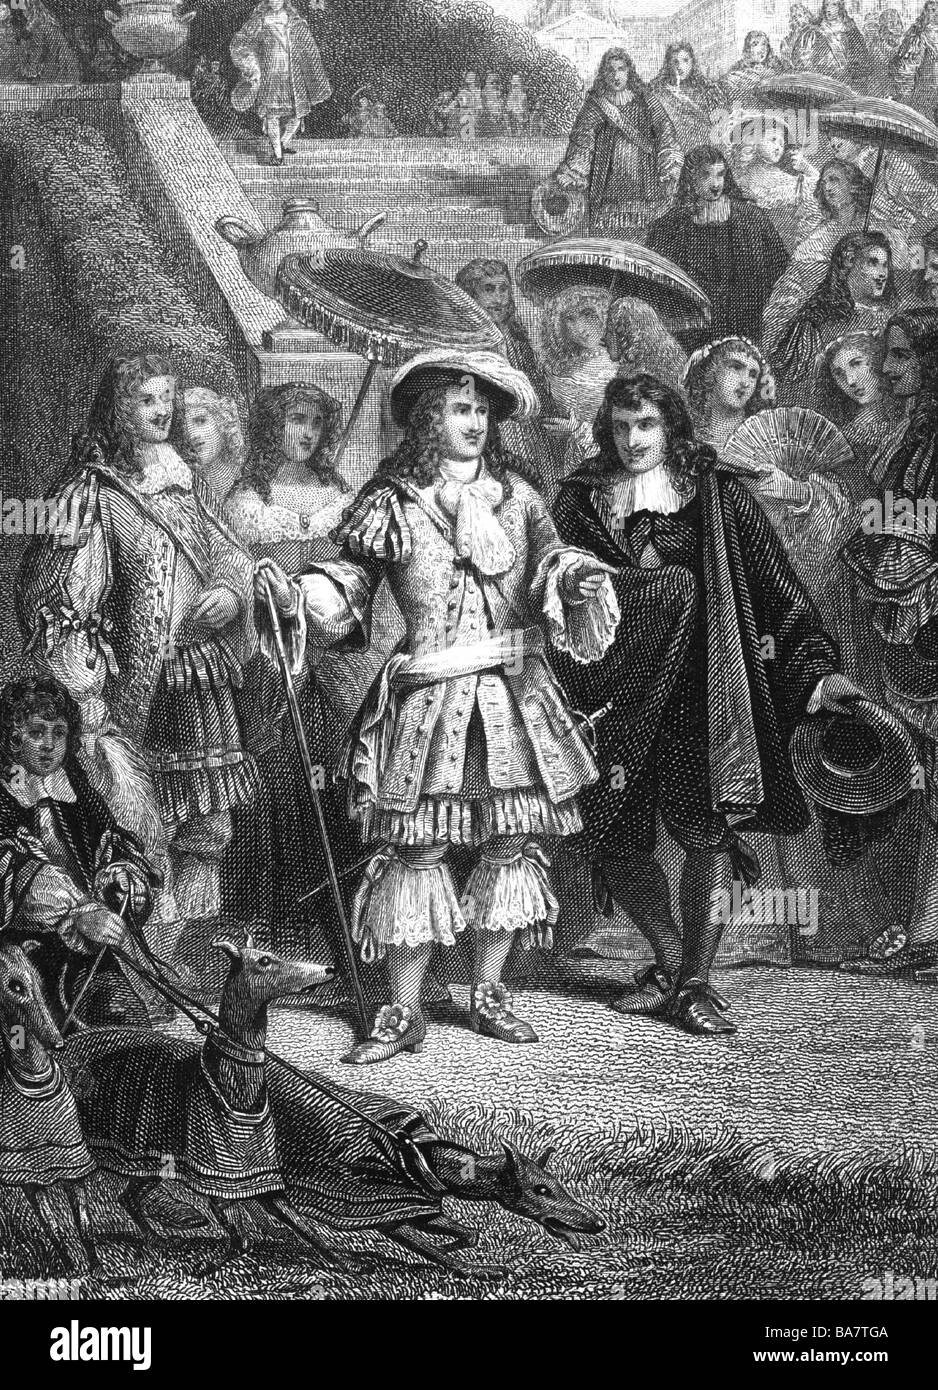 Louis XIV, 5.9.1638 - 1.9.1715, Roi de France 1643 - 1715, pleine longueur, avec sa suite royale, gravure anonyme, 19e siècle, l'artiste n'a pas d'auteur pour être effacé Banque D'Images